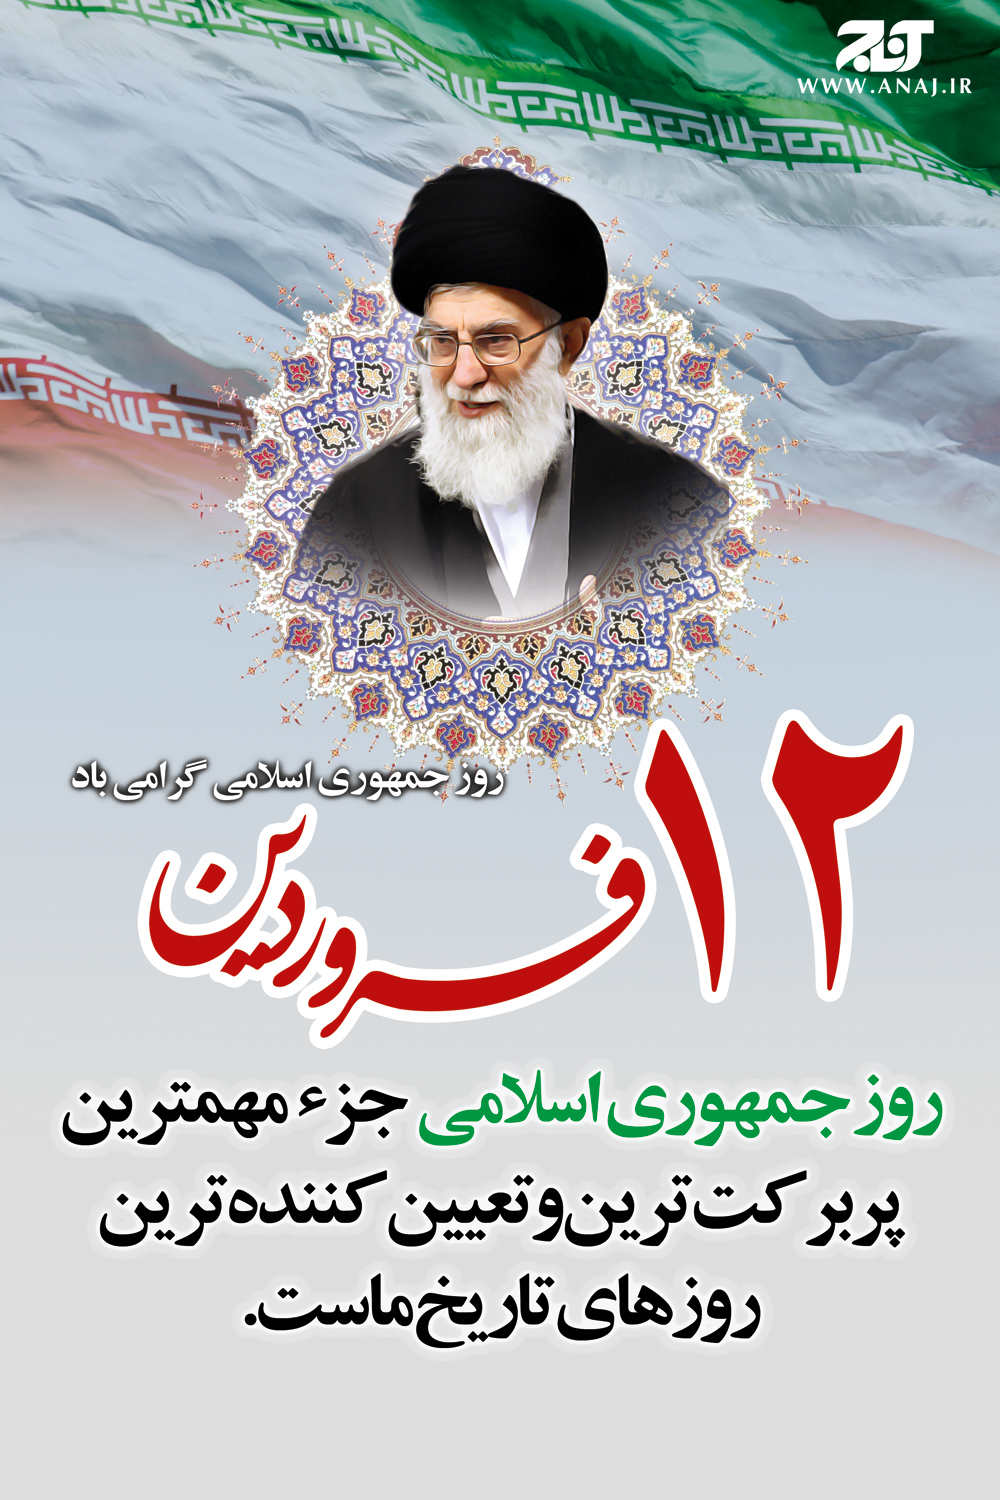 12 فروردین، روز جمهوری اسلامی ایران/پوستر